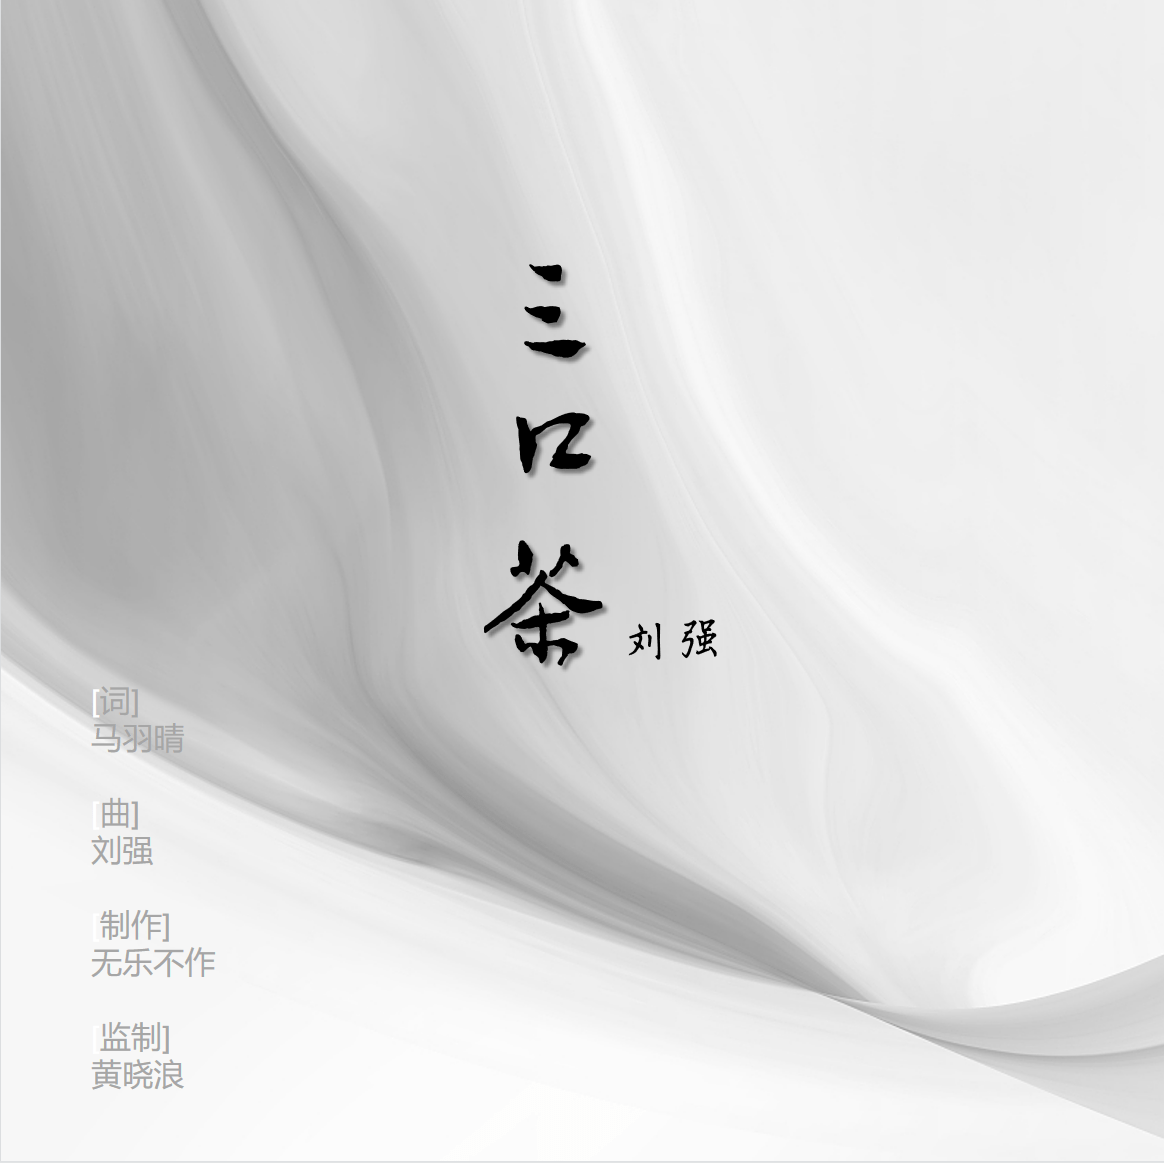 5月25日,由歌手刘强演唱的歌曲《三口茶》正式发行上线。《三口茶》是由马羽晴作词、刘强作曲、无乐不作制作，黄晓浪监制，刘强演唱的一首原创歌曲。